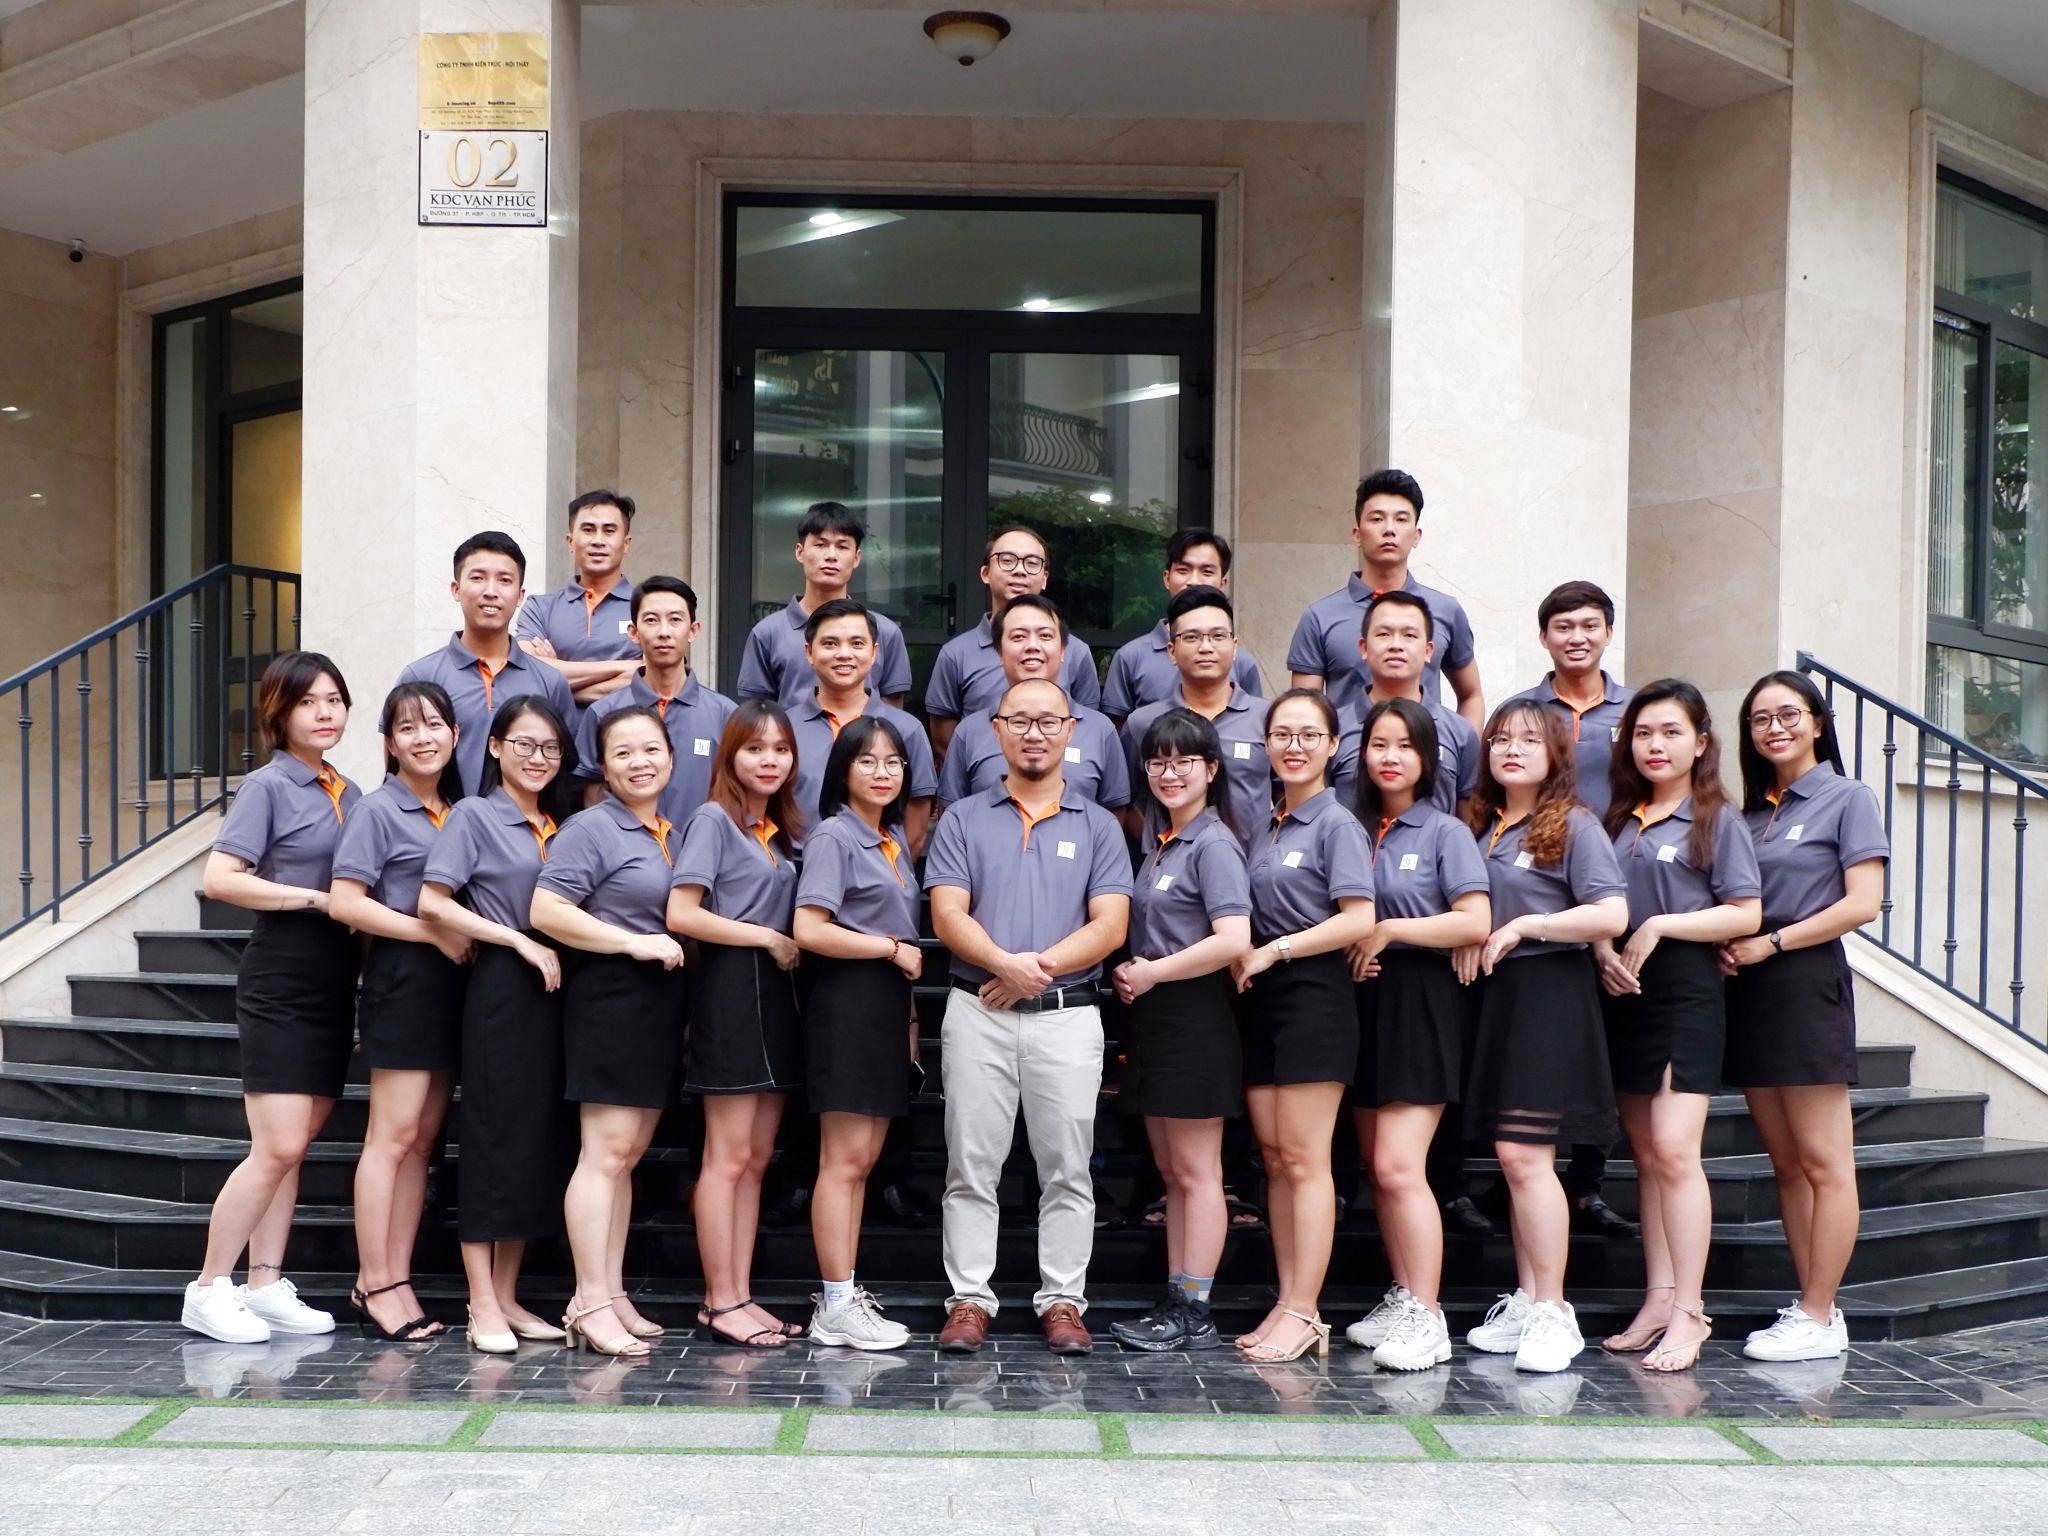 S.housing - Một trong những đơn vị thi công nội thất nhà phố uy tín nhất tại TP. Hồ Chí Minh